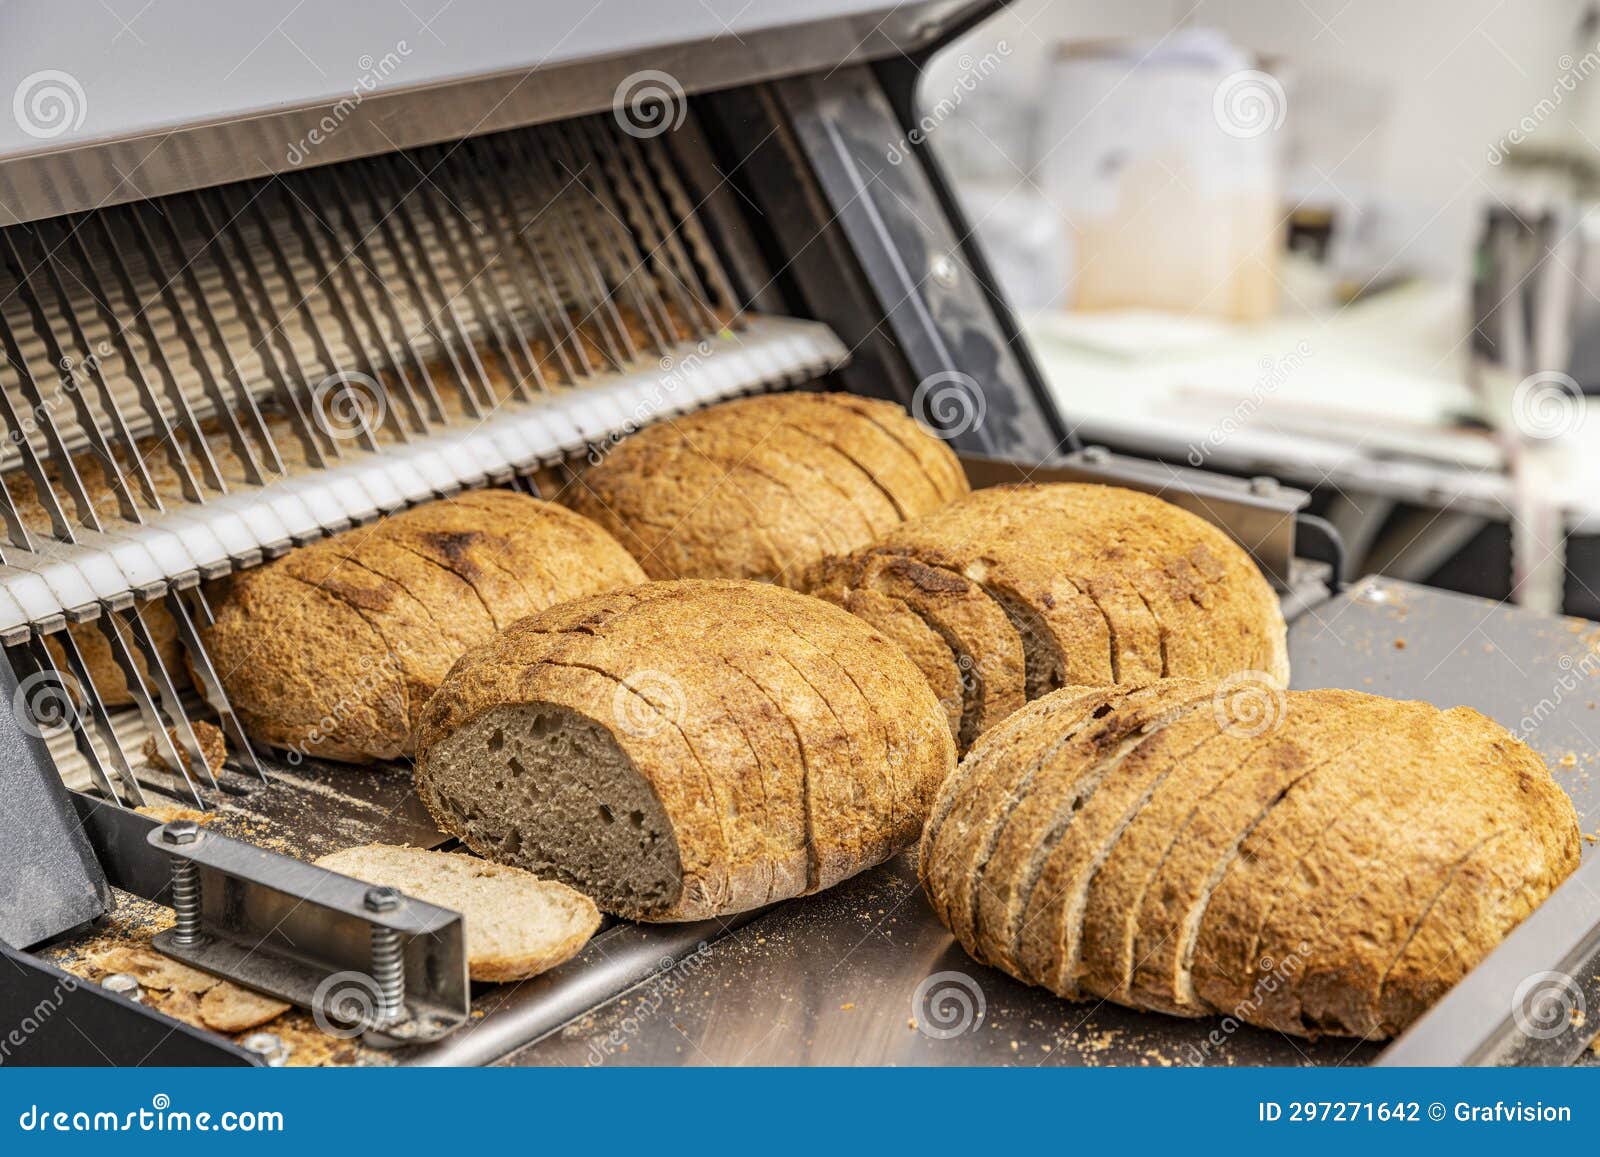 Sourdough bread slicing Stock Photo by grafvision